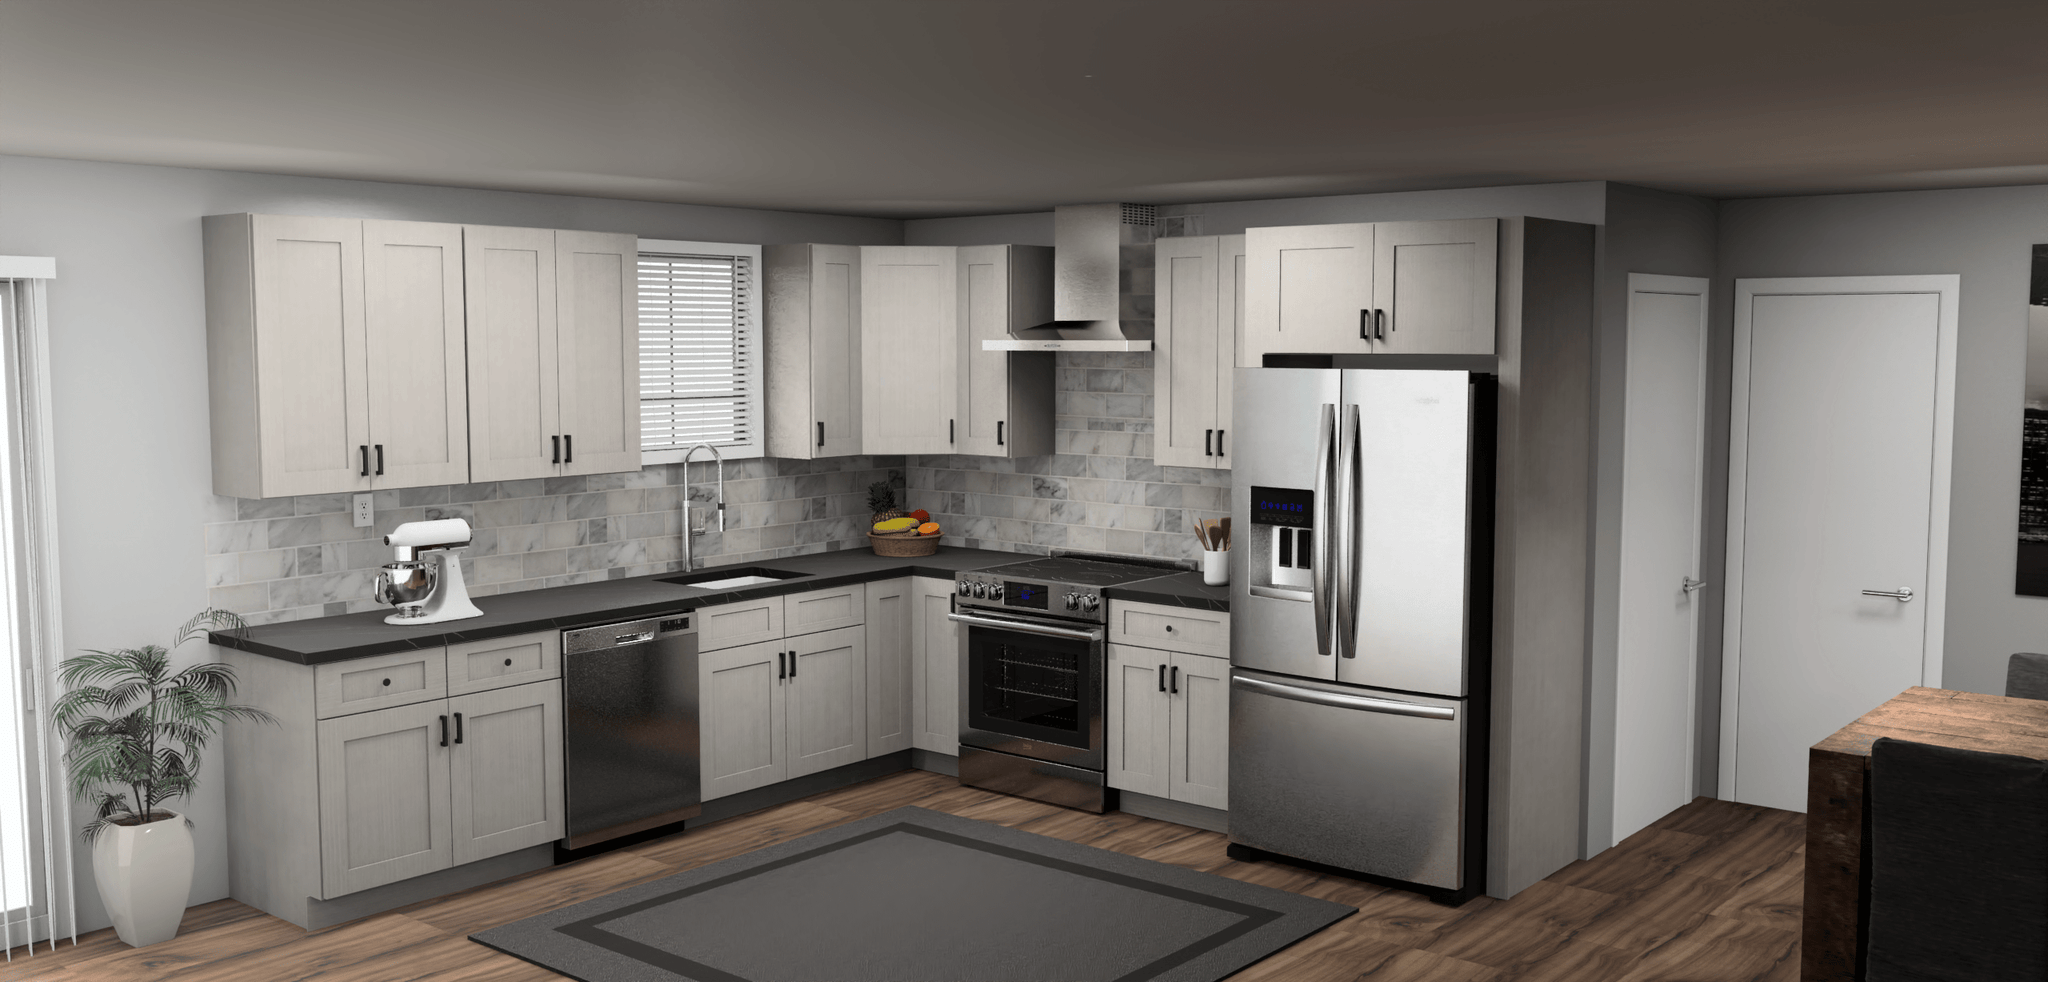 Fabuwood Allure Galaxy Horizon 11 x 11 L Shaped Kitchen Main Layout Photo